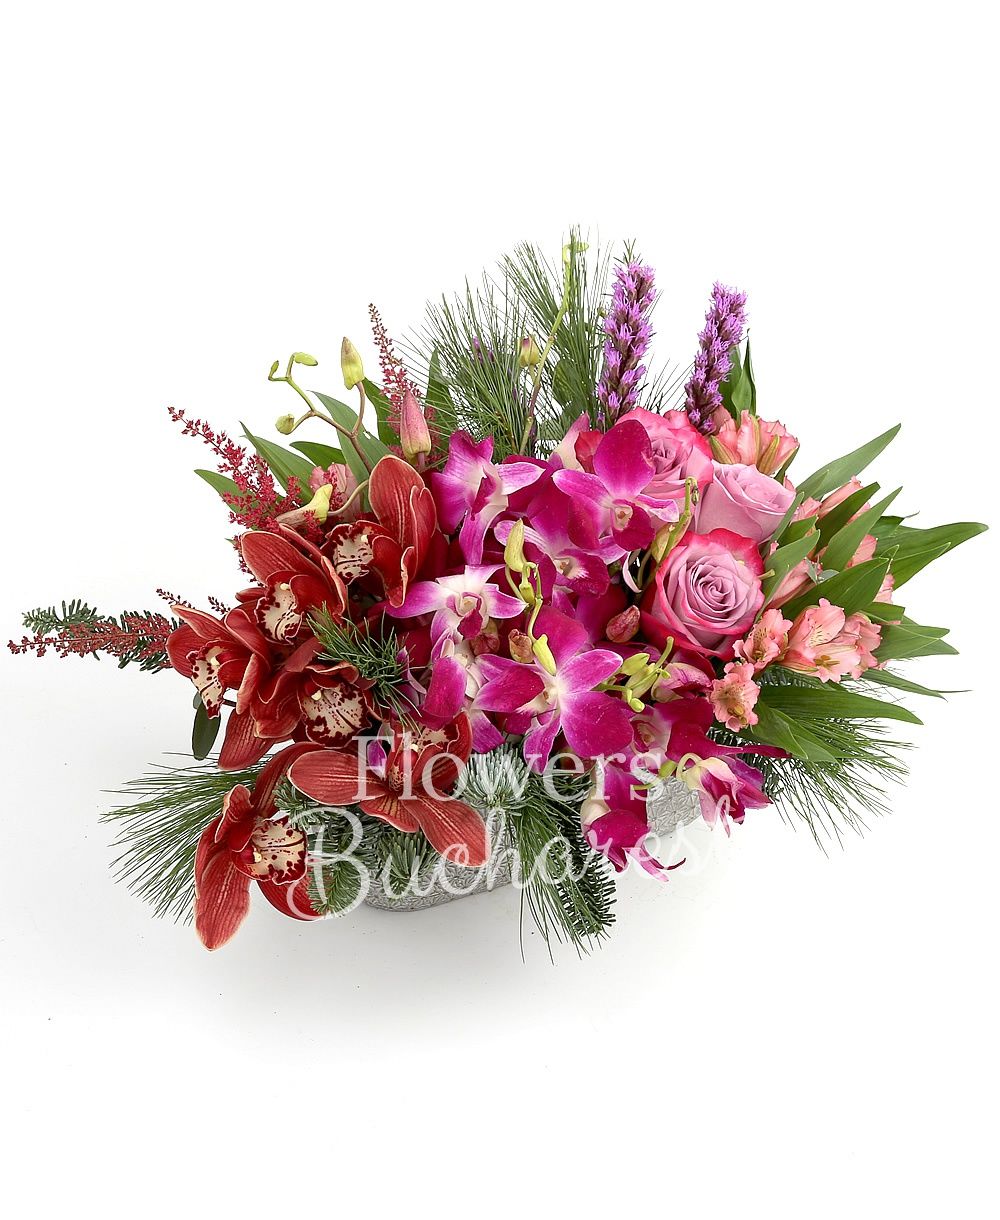 3 mauve roses, 5 mauve dendrobium orchid, 1 garnet cymbidium, 3 astilbe, 3 pink alstroemeria, 3 liatris, pine tree, ceramic vase